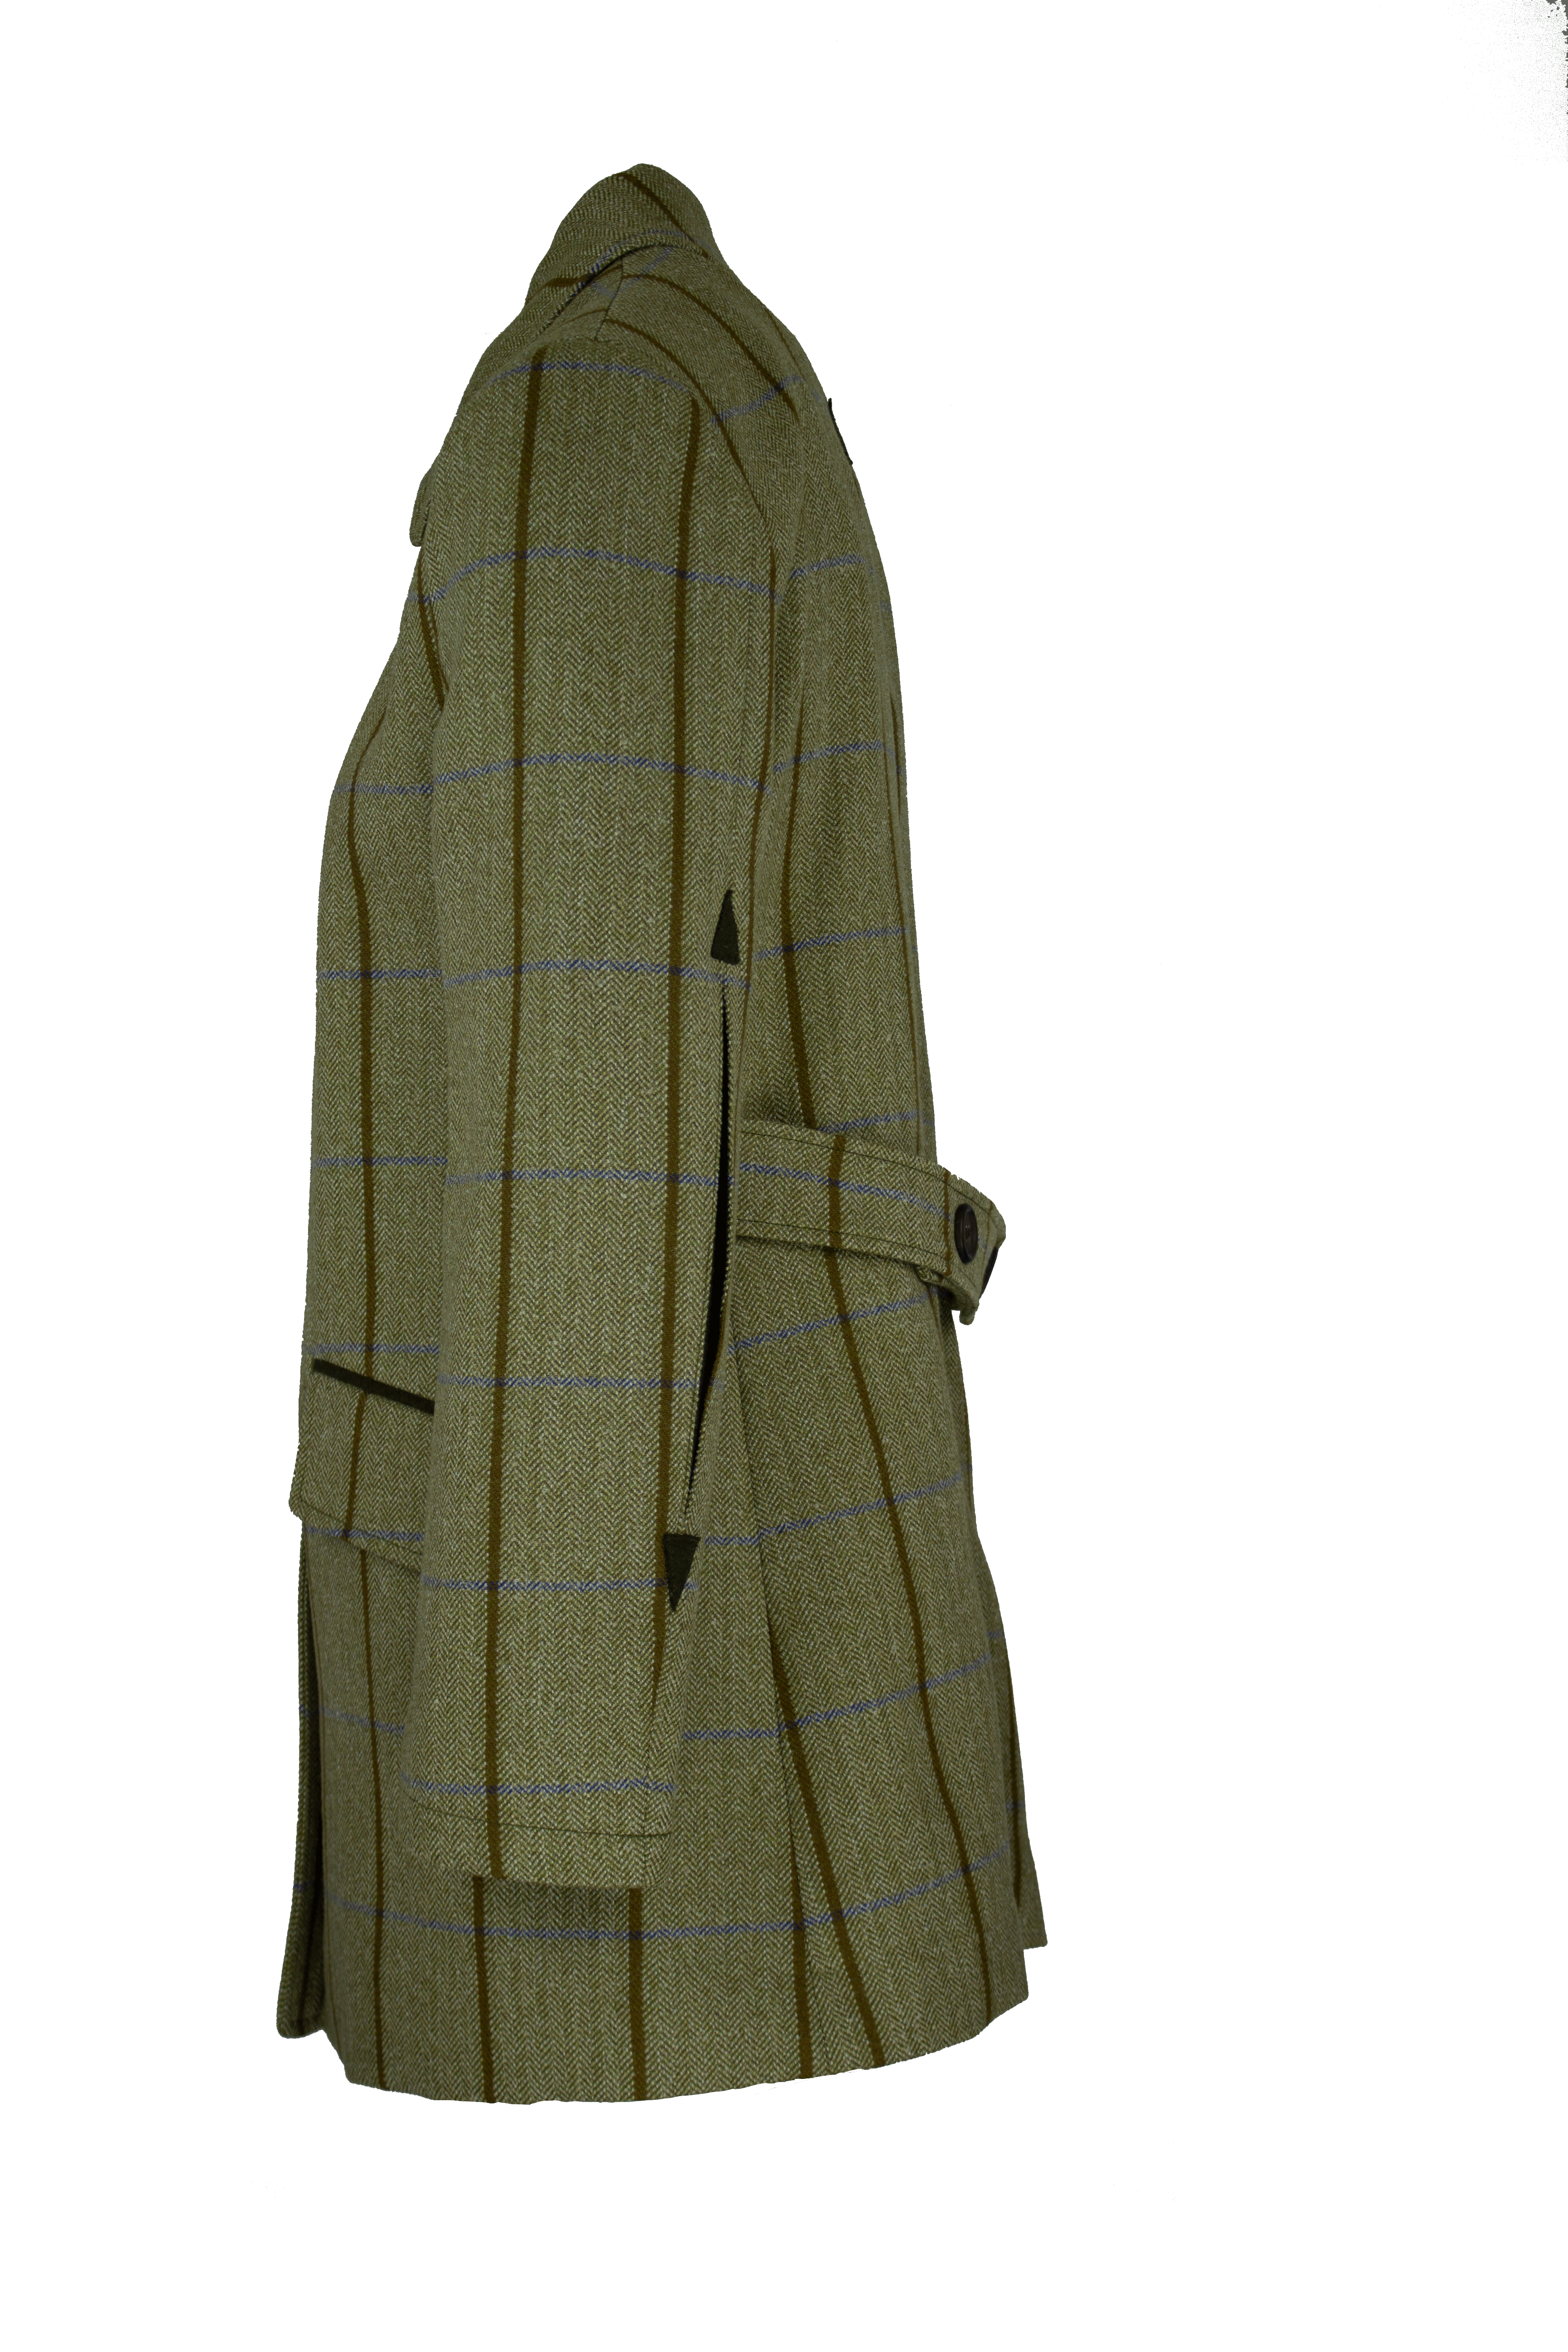 LTW02 - Women's Tailored Tweed Coat - BLUE